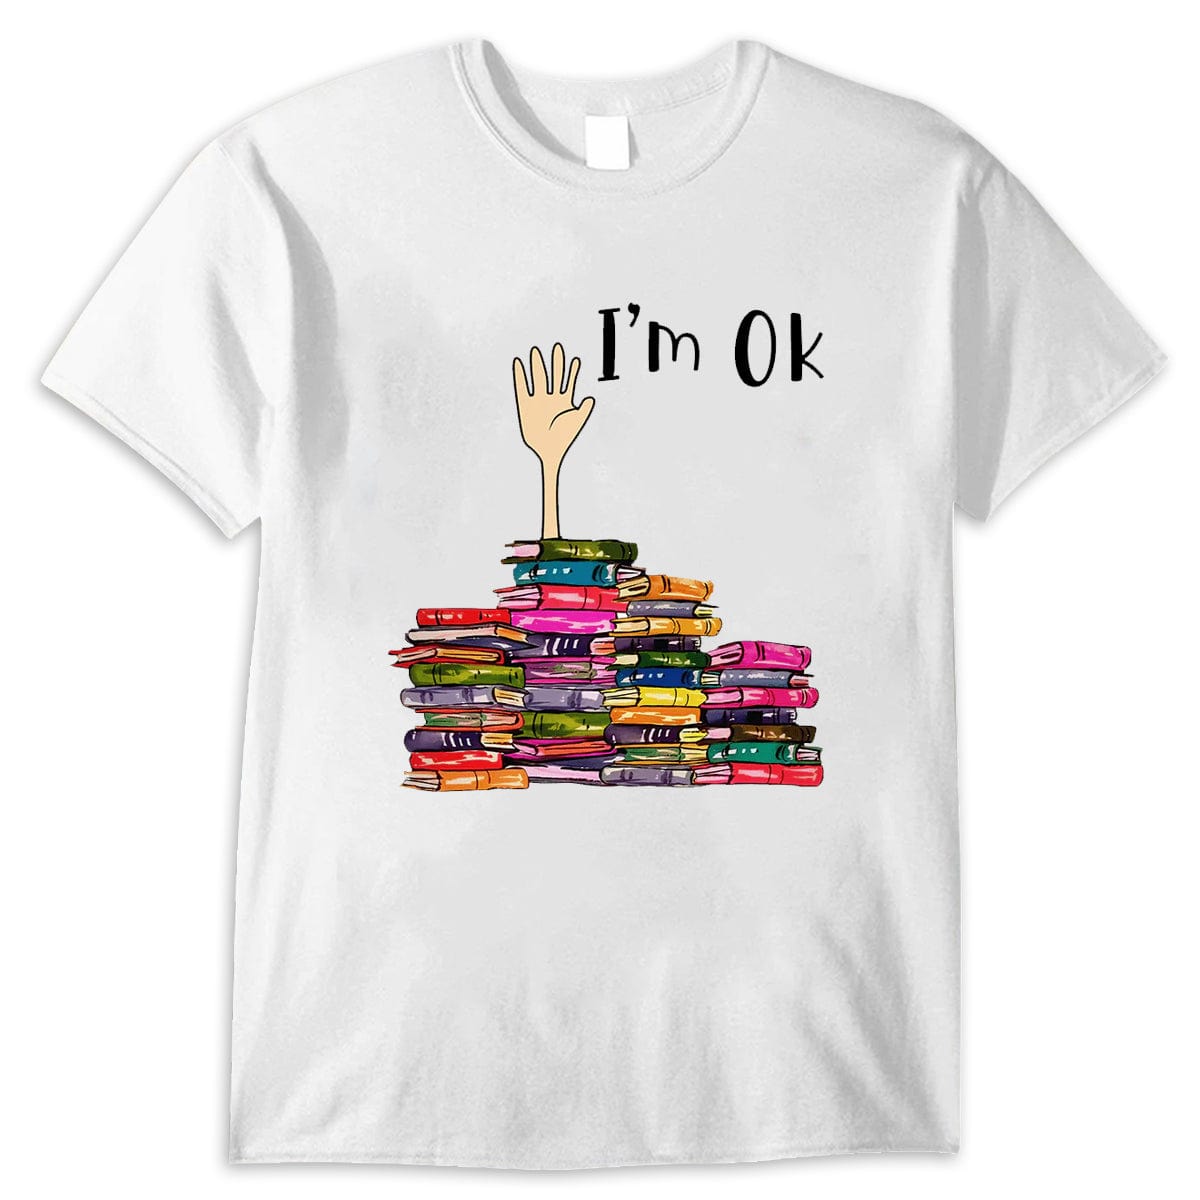 I'm Ok Book Funny Shirt